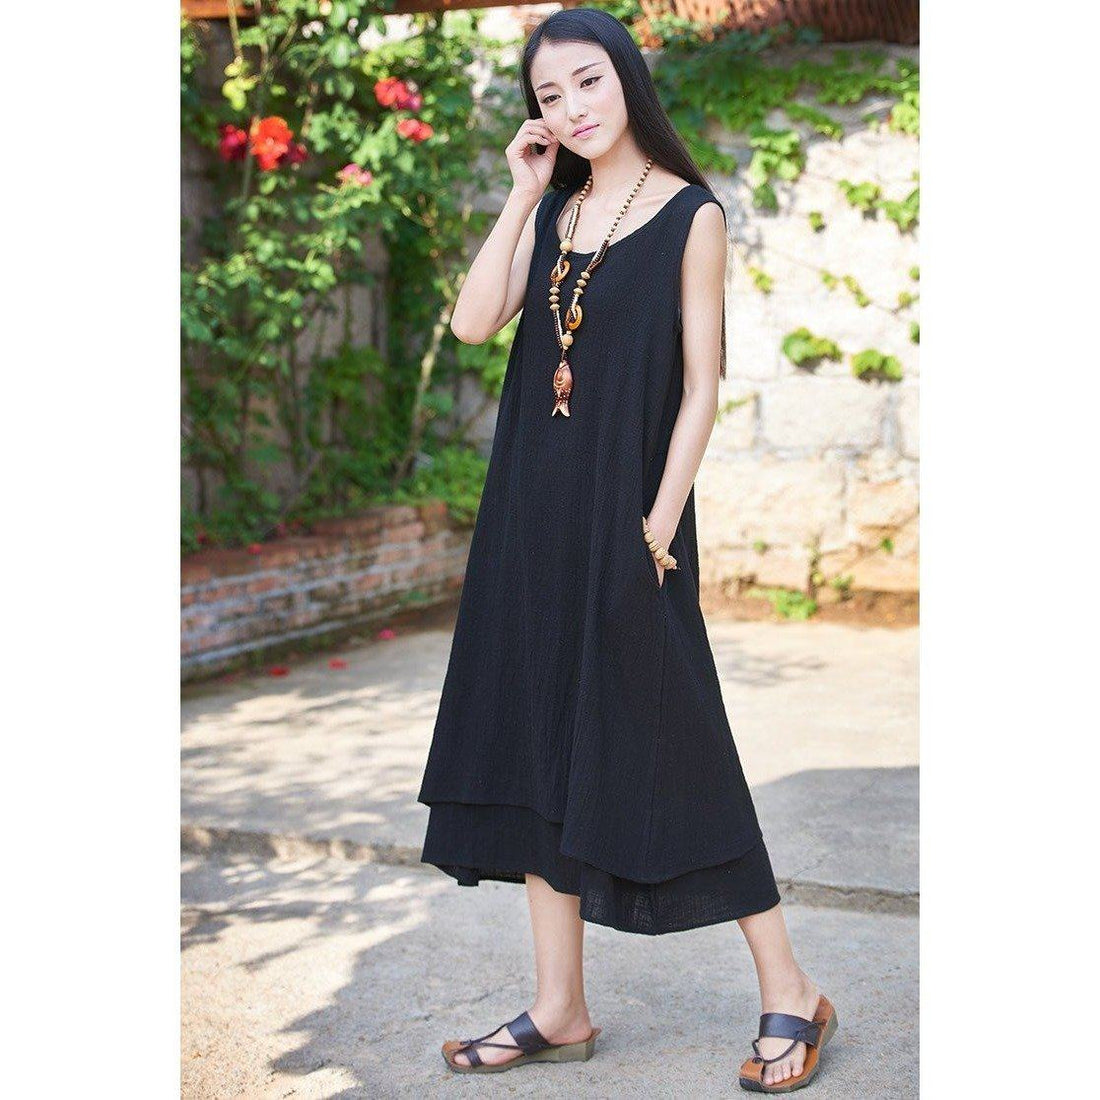 Buddha Trends Dress Black / S Casual Sleeveless Linen Dress  | Zen